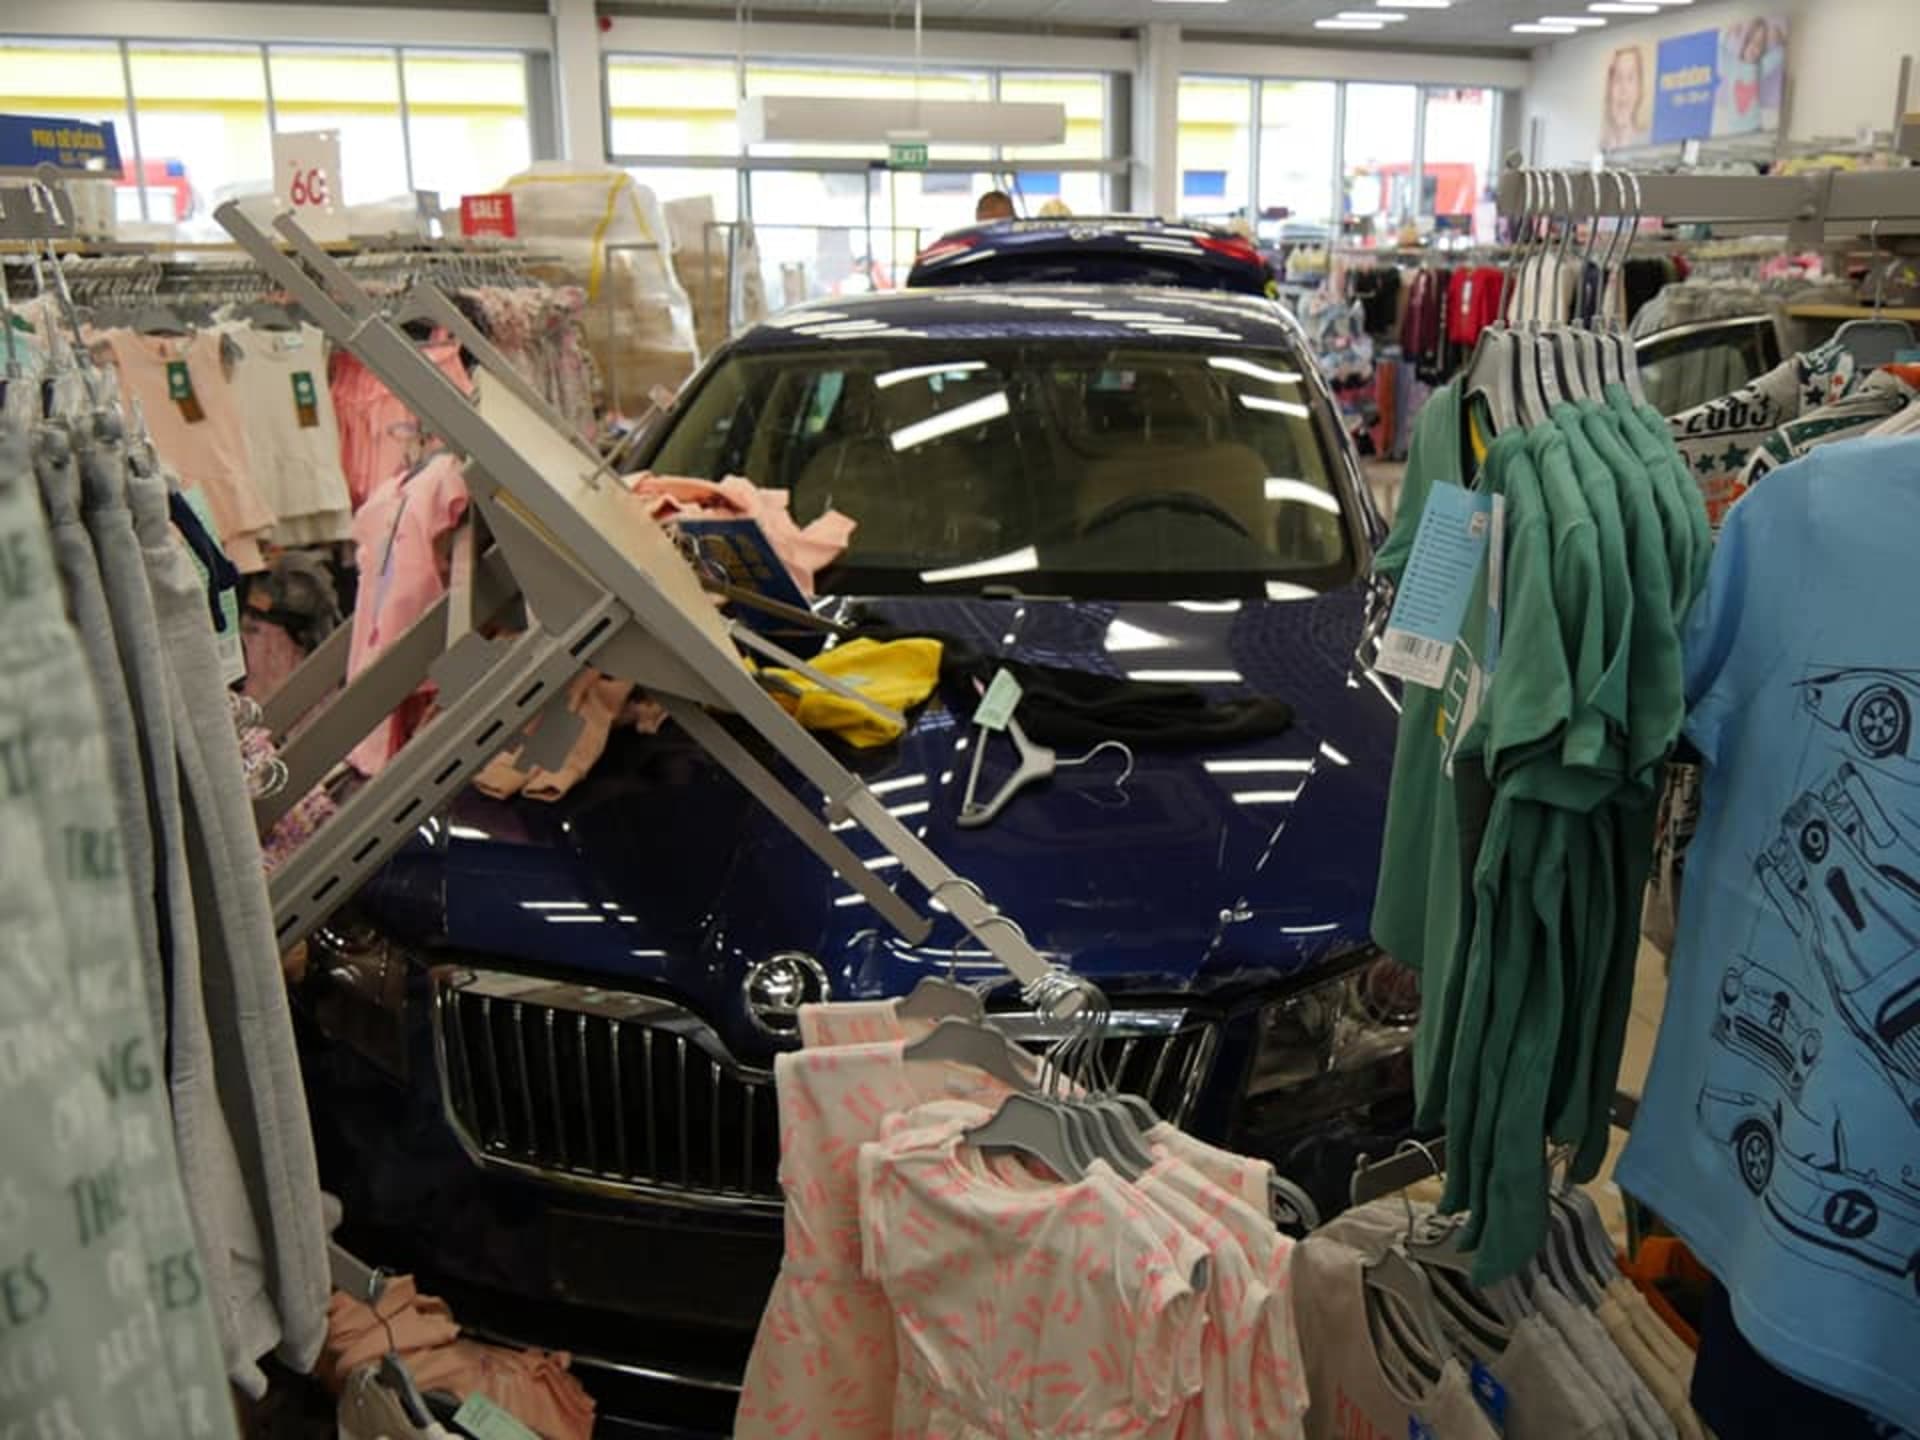 Auto projelo výlohou do obchodu s oblečením.